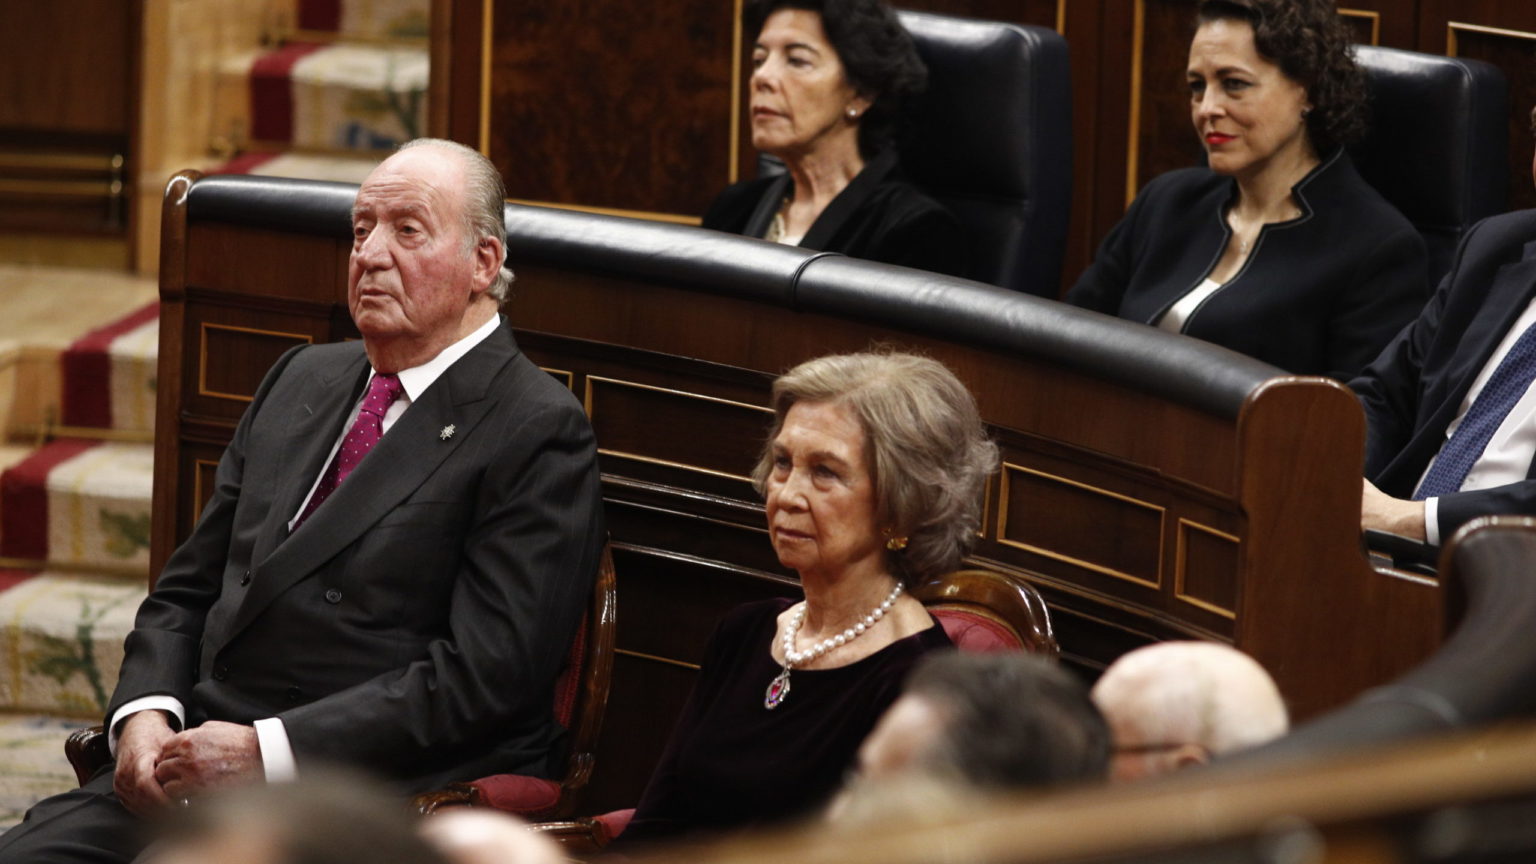 Juan Carlos I se verá con el Rey en público por primera vez en dos años en el funeral de Isabel II